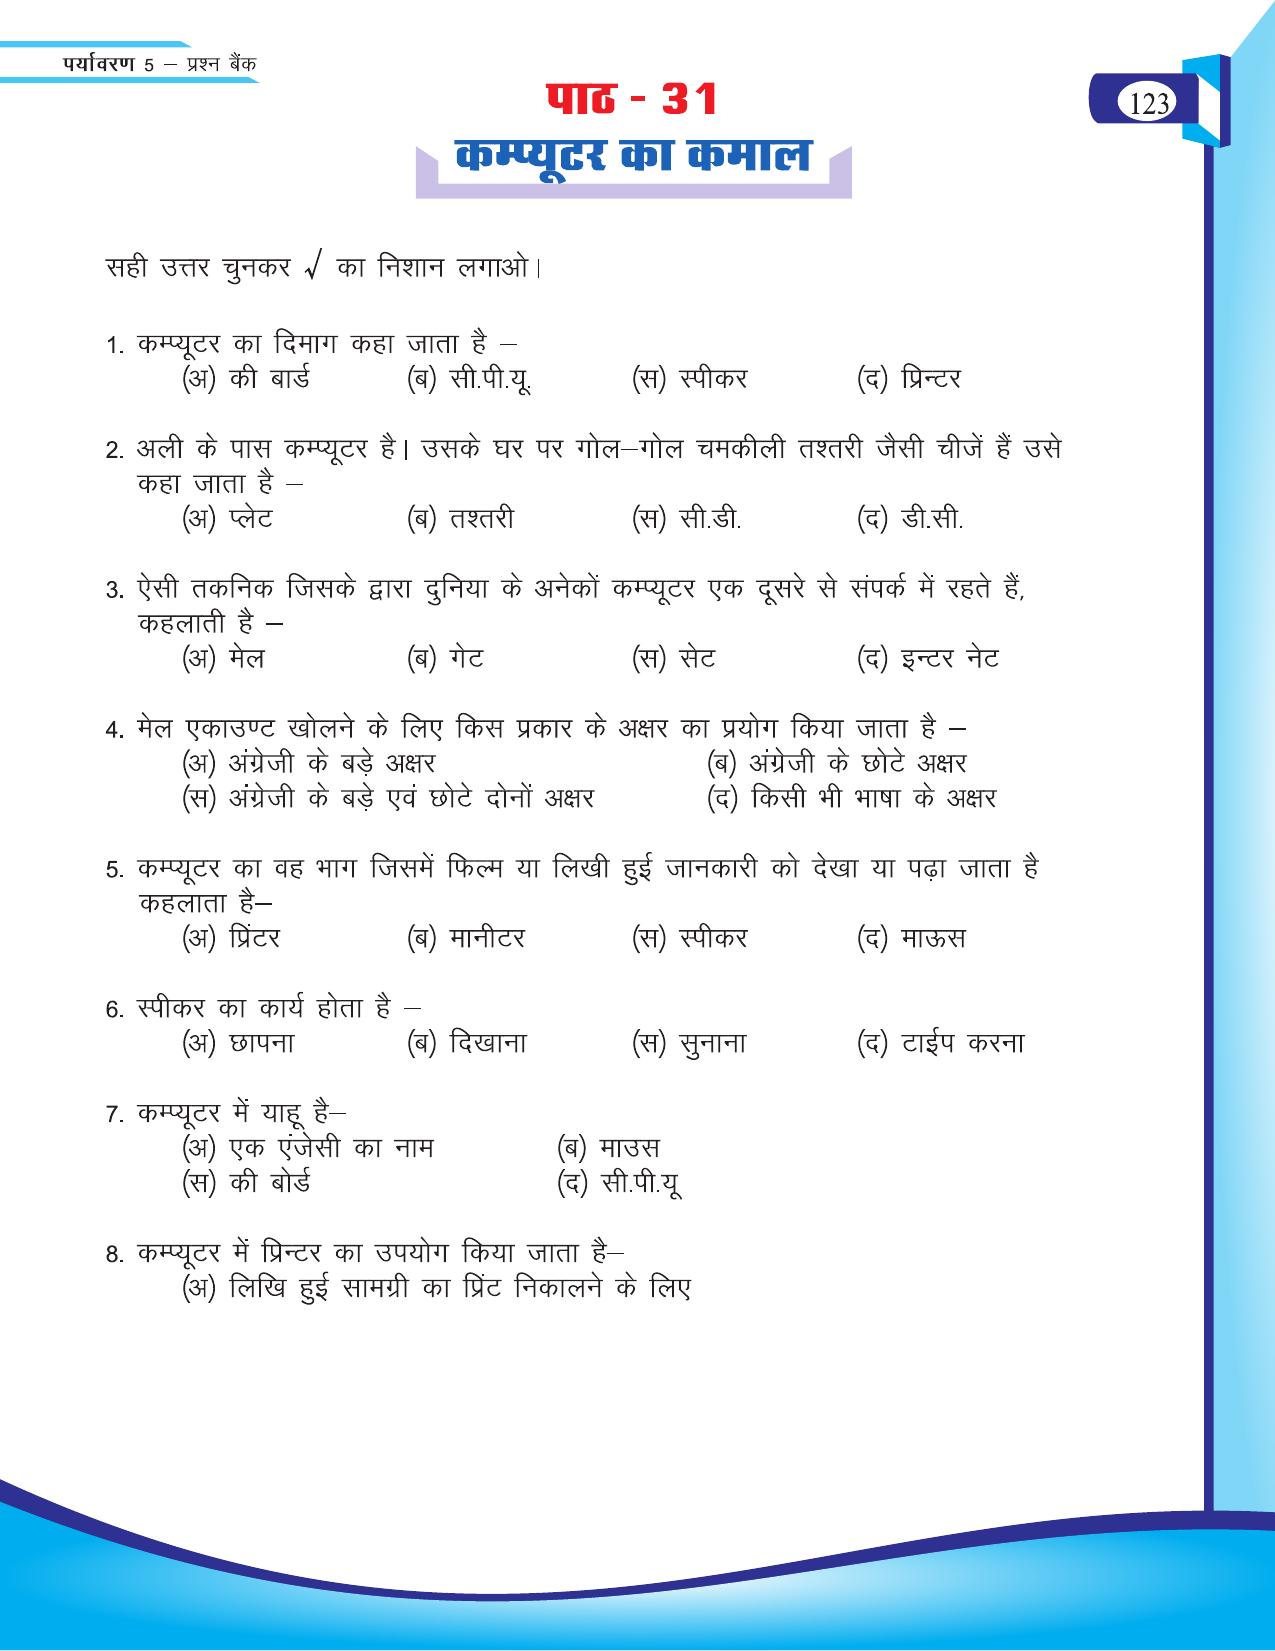 Chhattisgarh Board Class 5 EVS Question Bank 2015-16 - Page 49